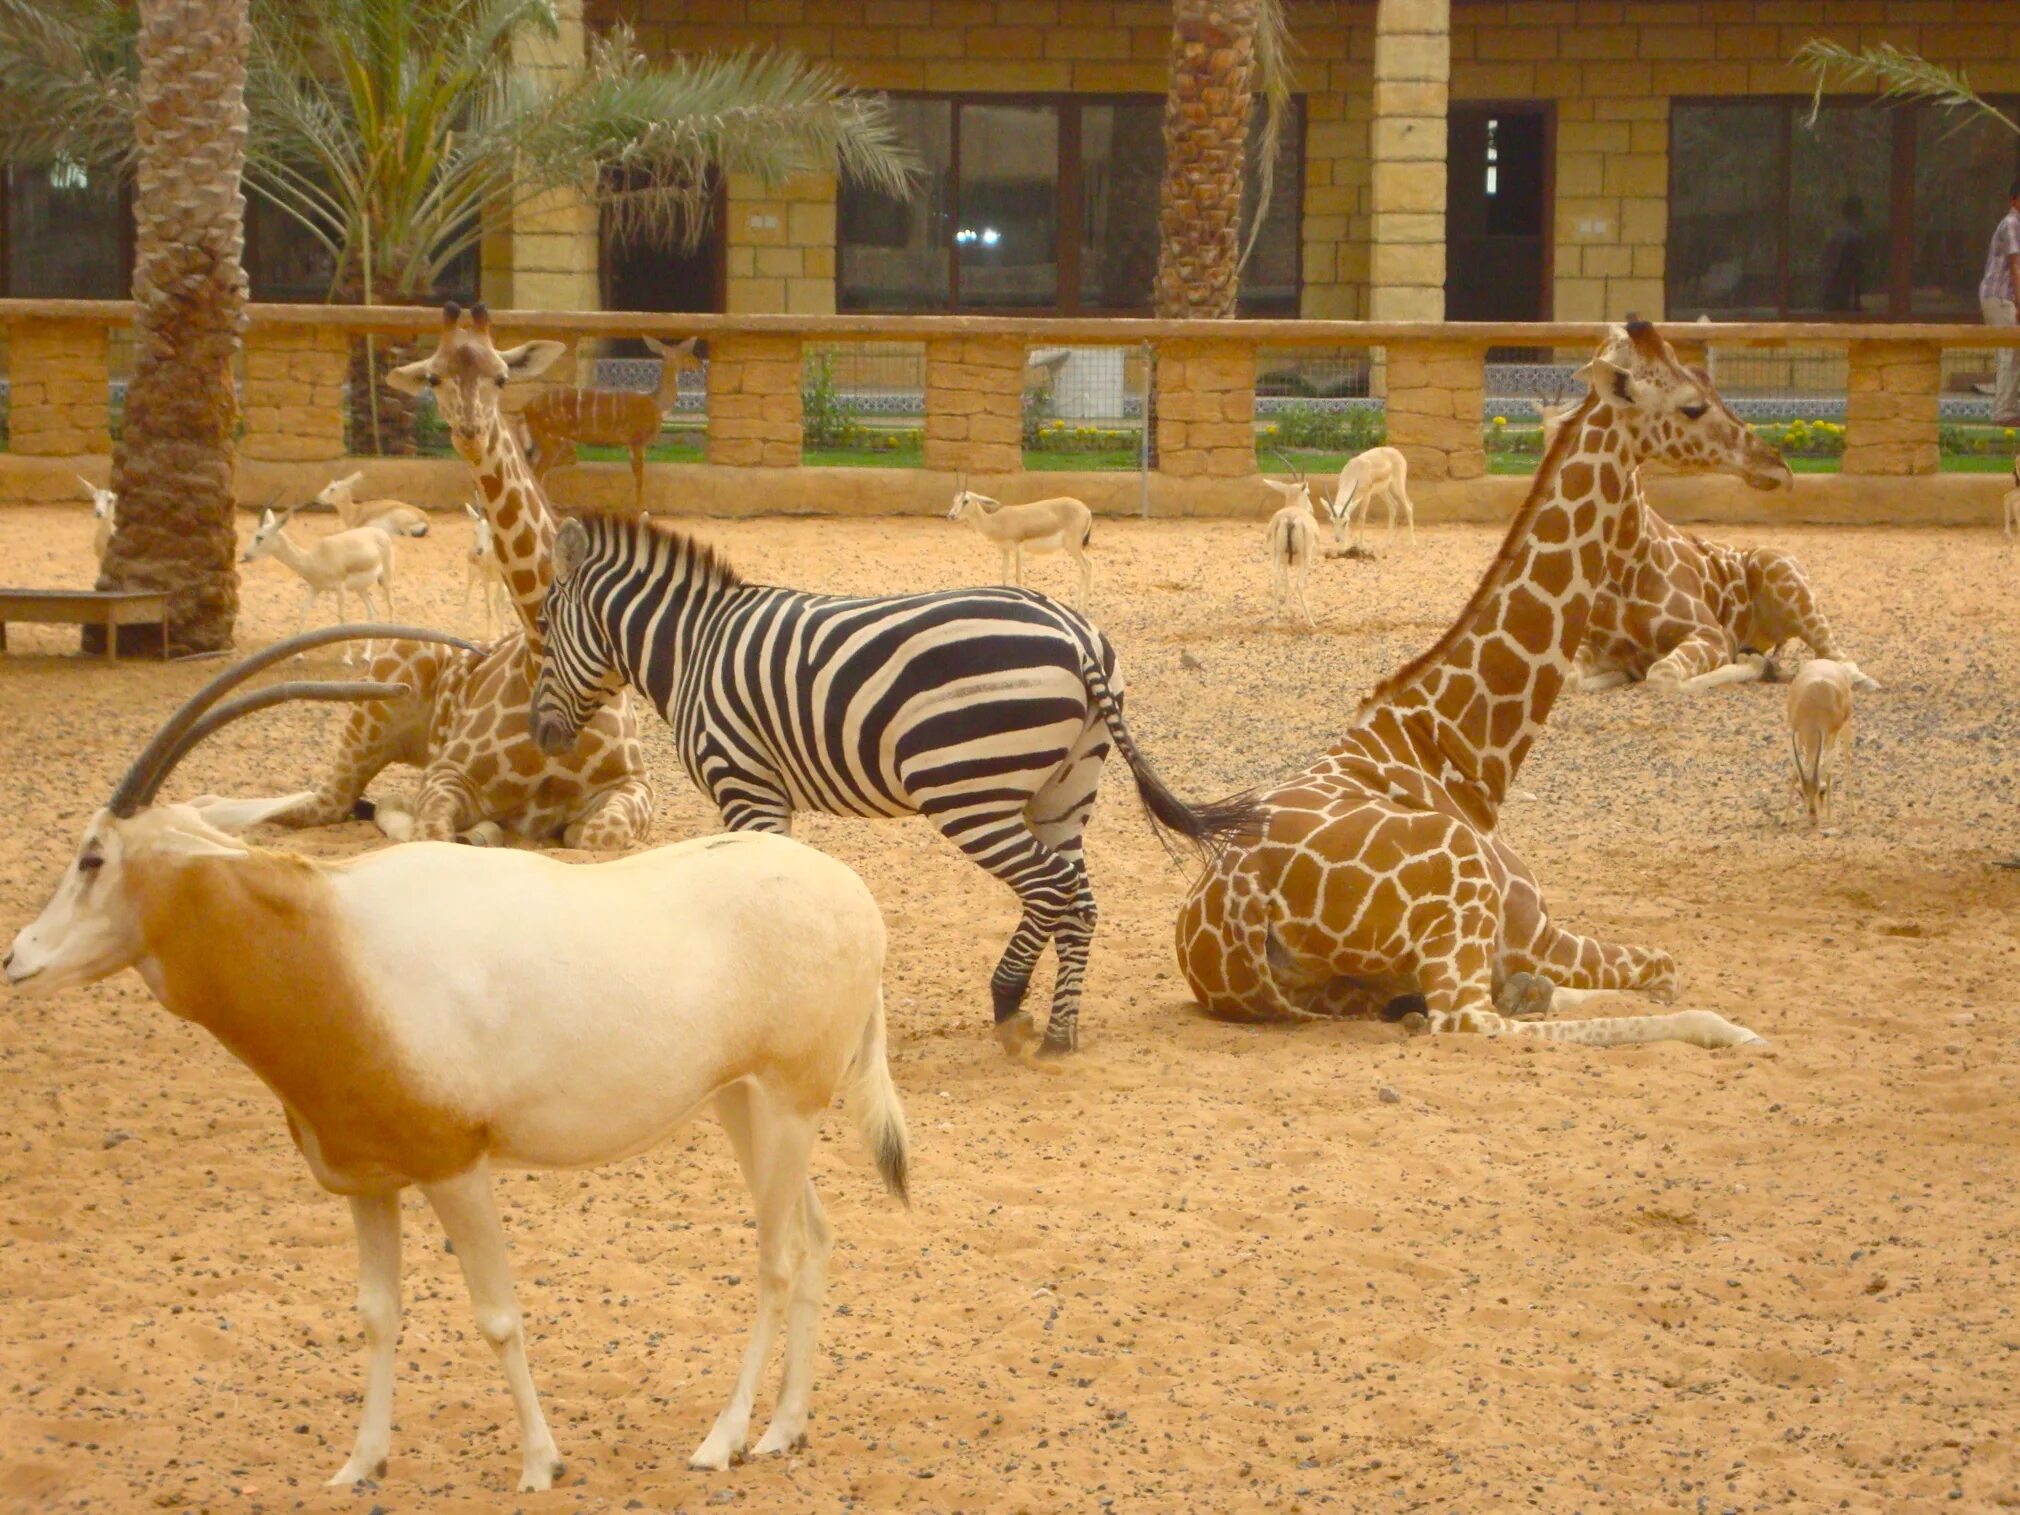 Лев тигр жираф. Сафари-парк зоопарка Сан-Диего. Зоопарк Абу Даби. Мадагаскар зоопарк Сан Диего. Зоопарк Абу Даби завтрак с жирафом.